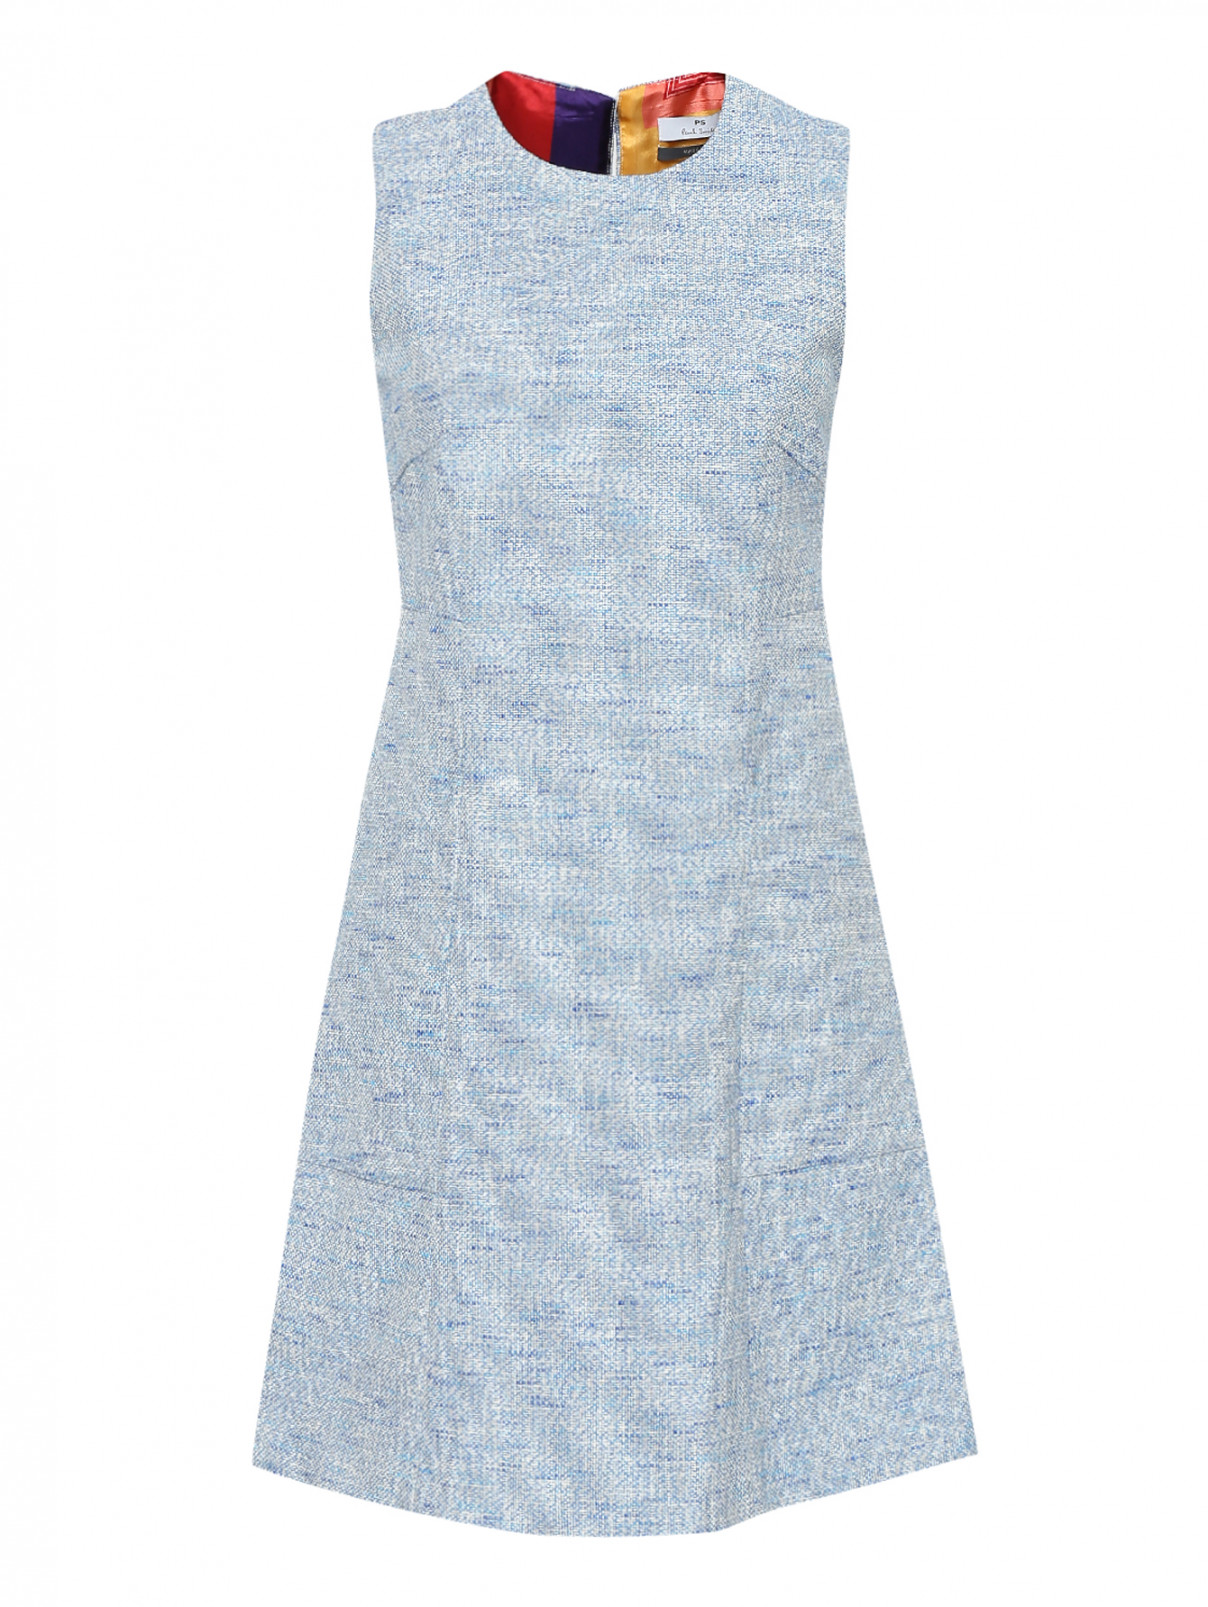 Платье из хлопка, с накладными карманами Paul Smith  –  Общий вид  – Цвет:  Синий